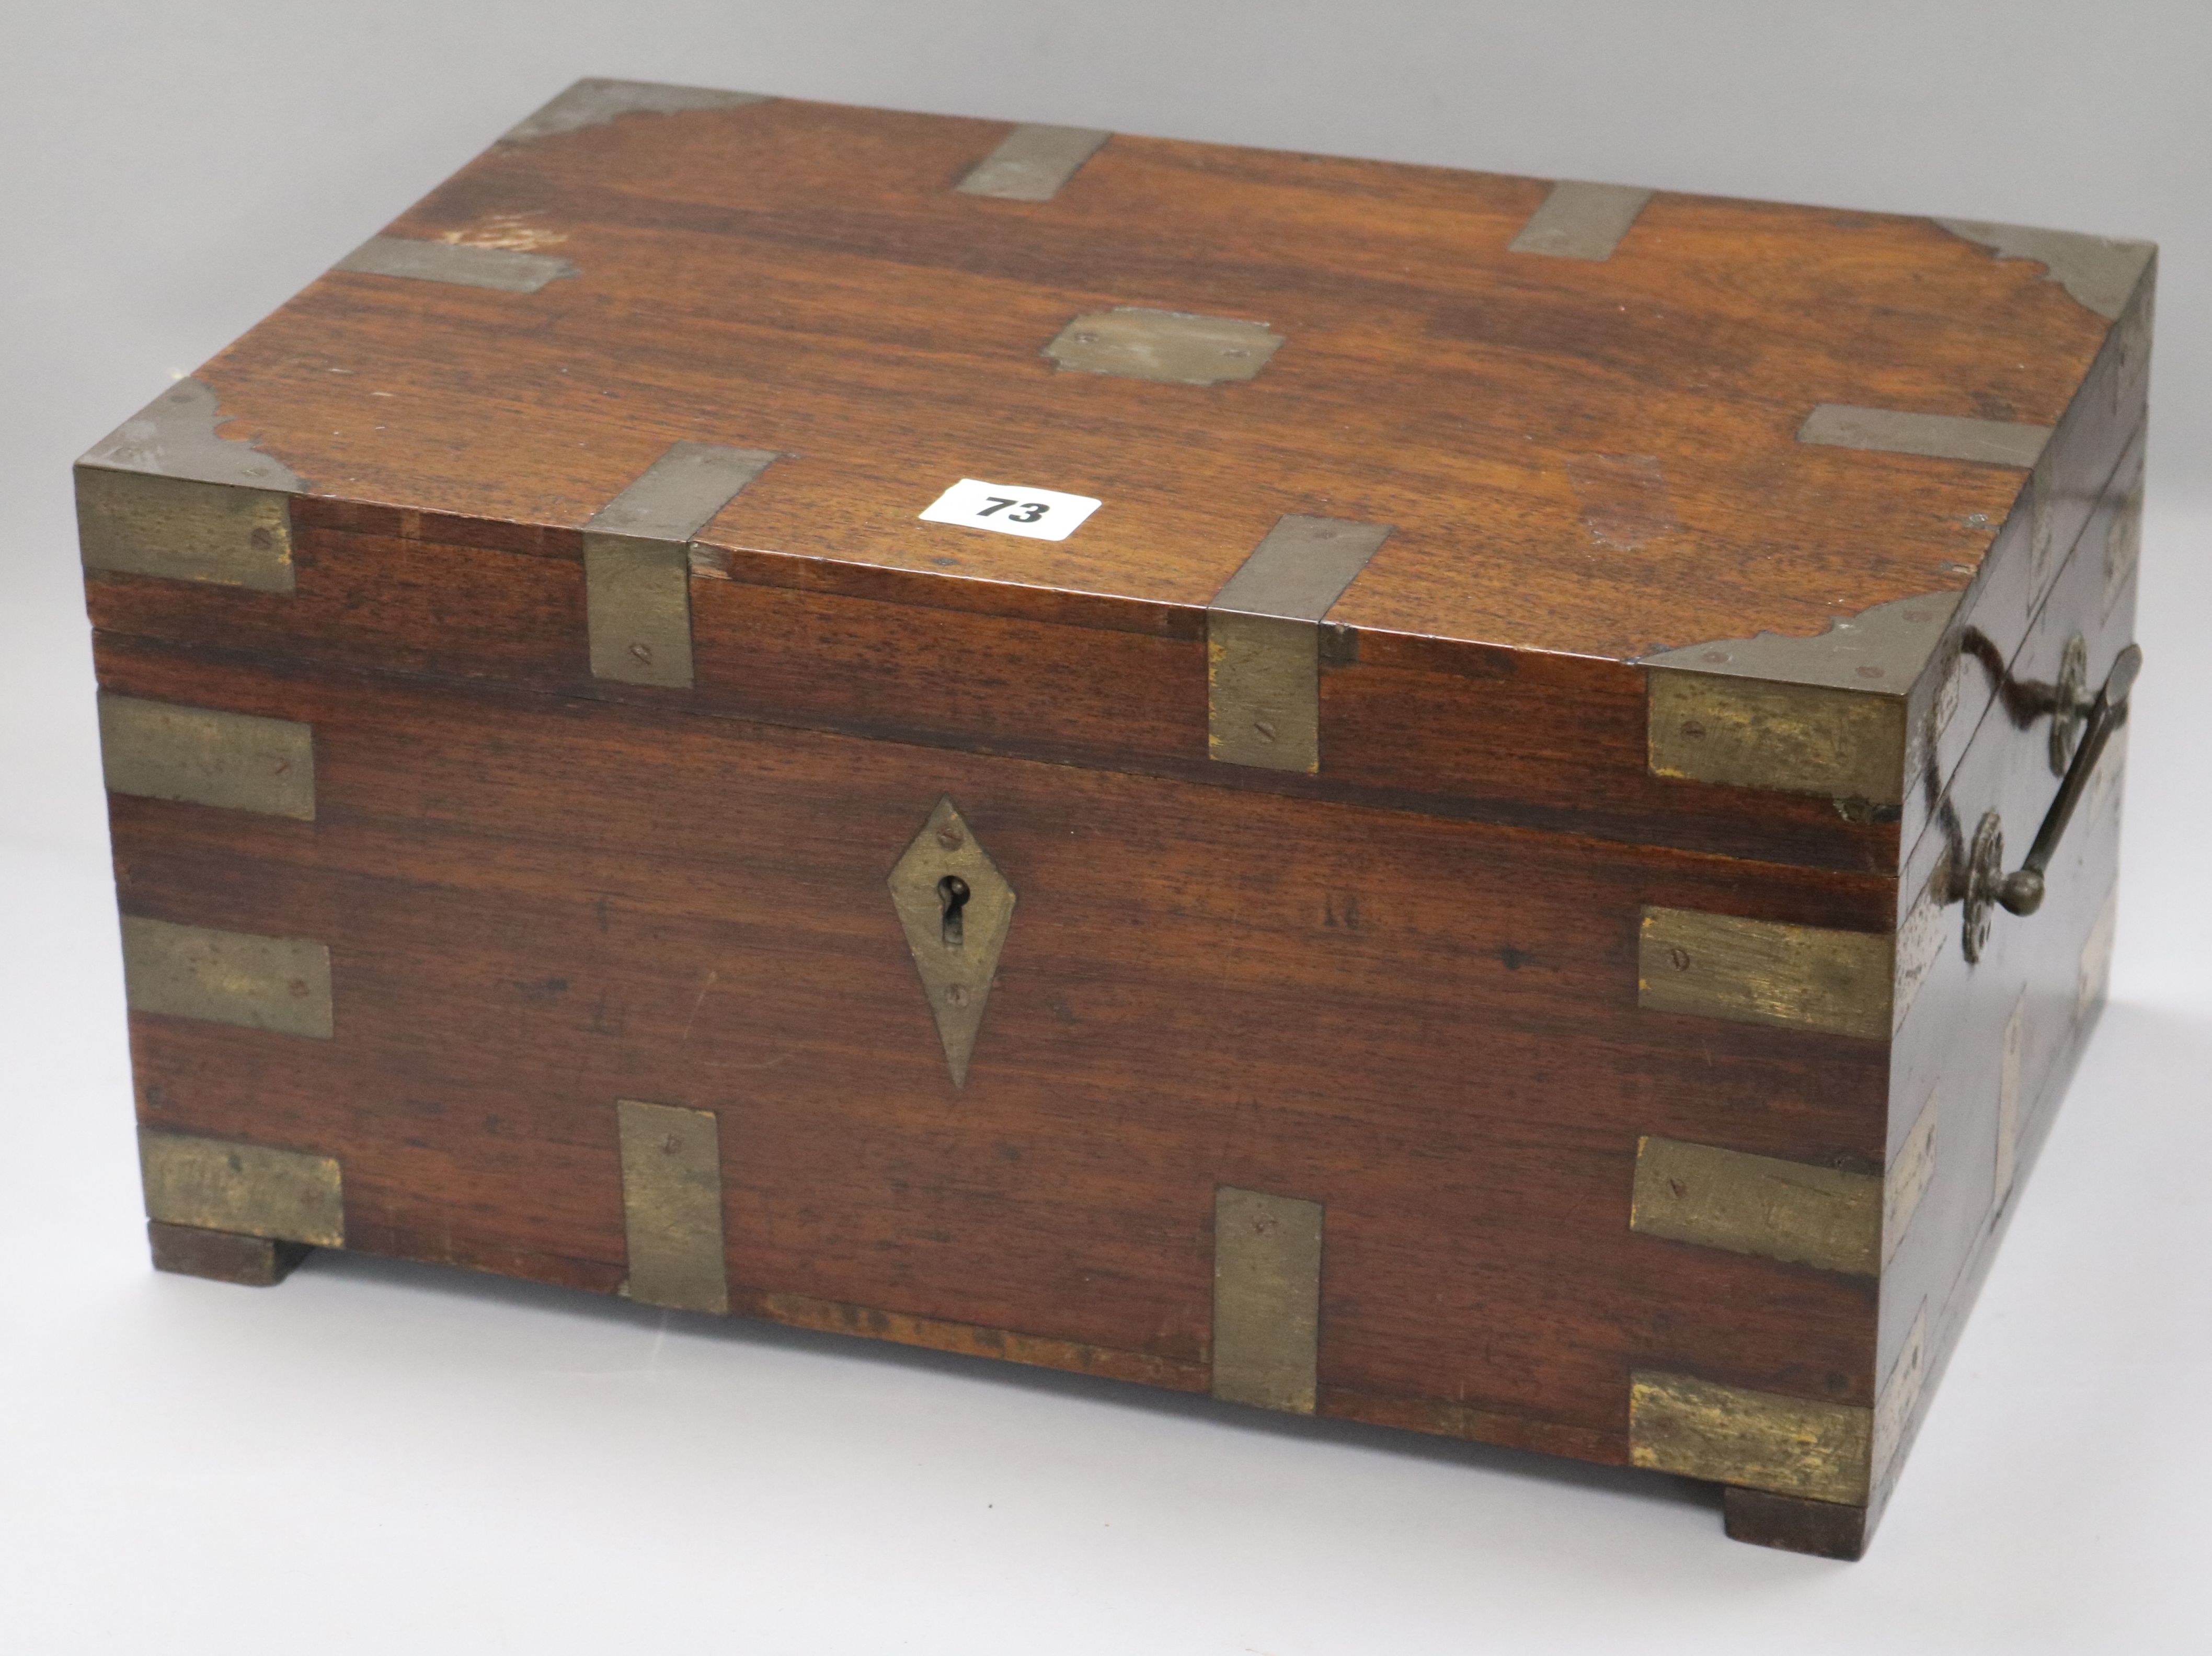 A 19th century mahogany brass bound box